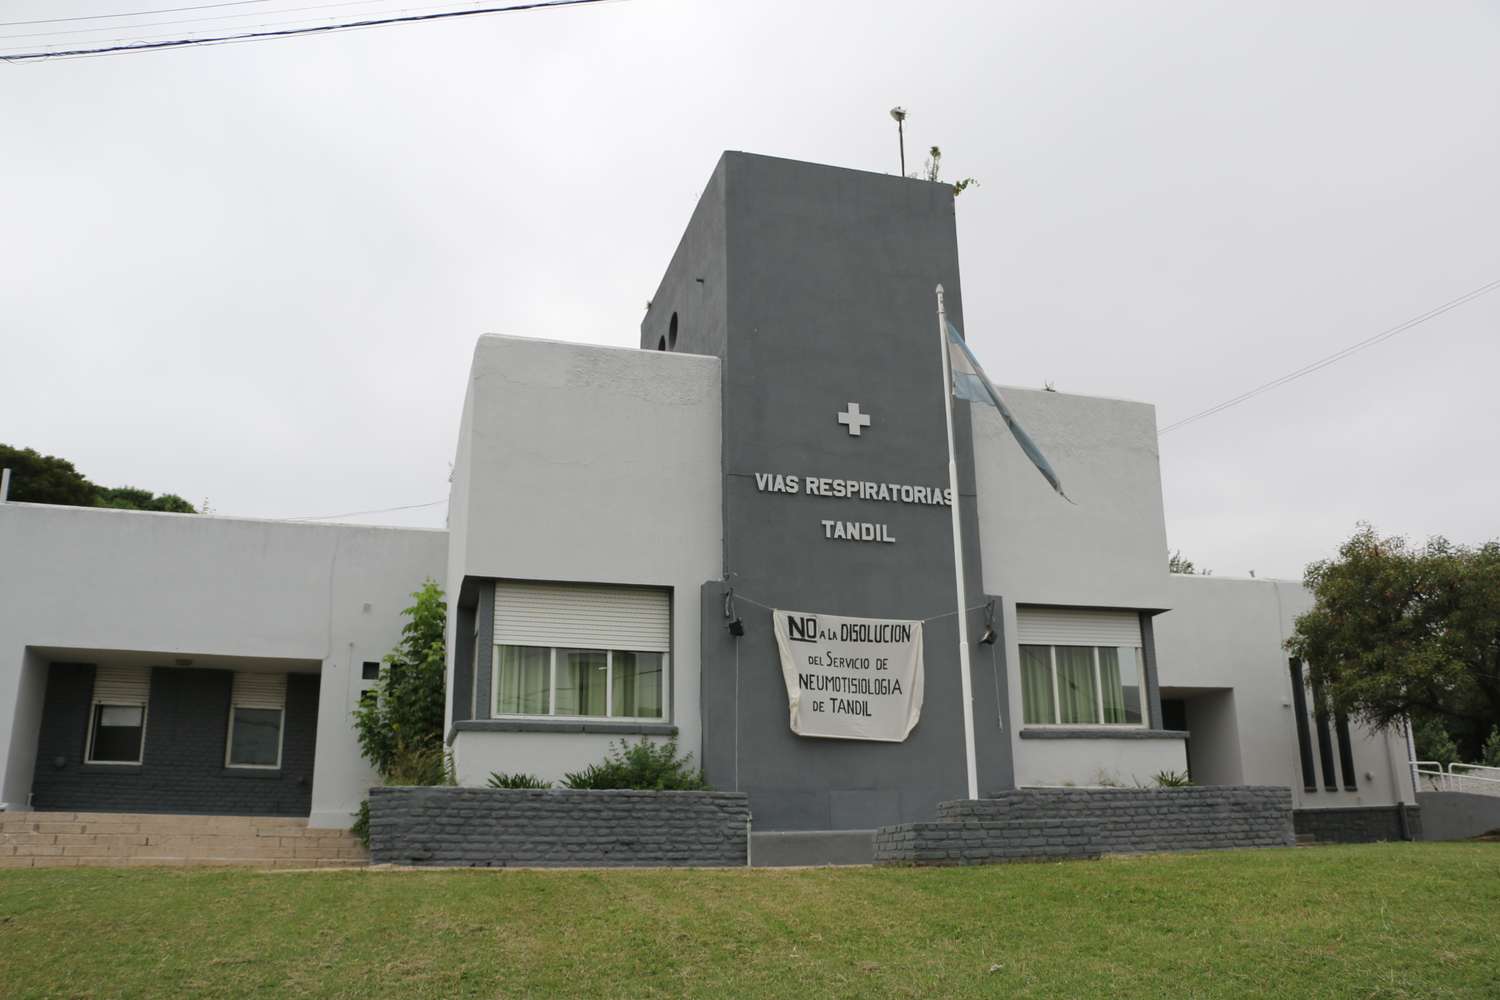 El Municipio criticó “falsas versiones” sobre el ex Dispensario y lo atribuyó a intereses partidarios